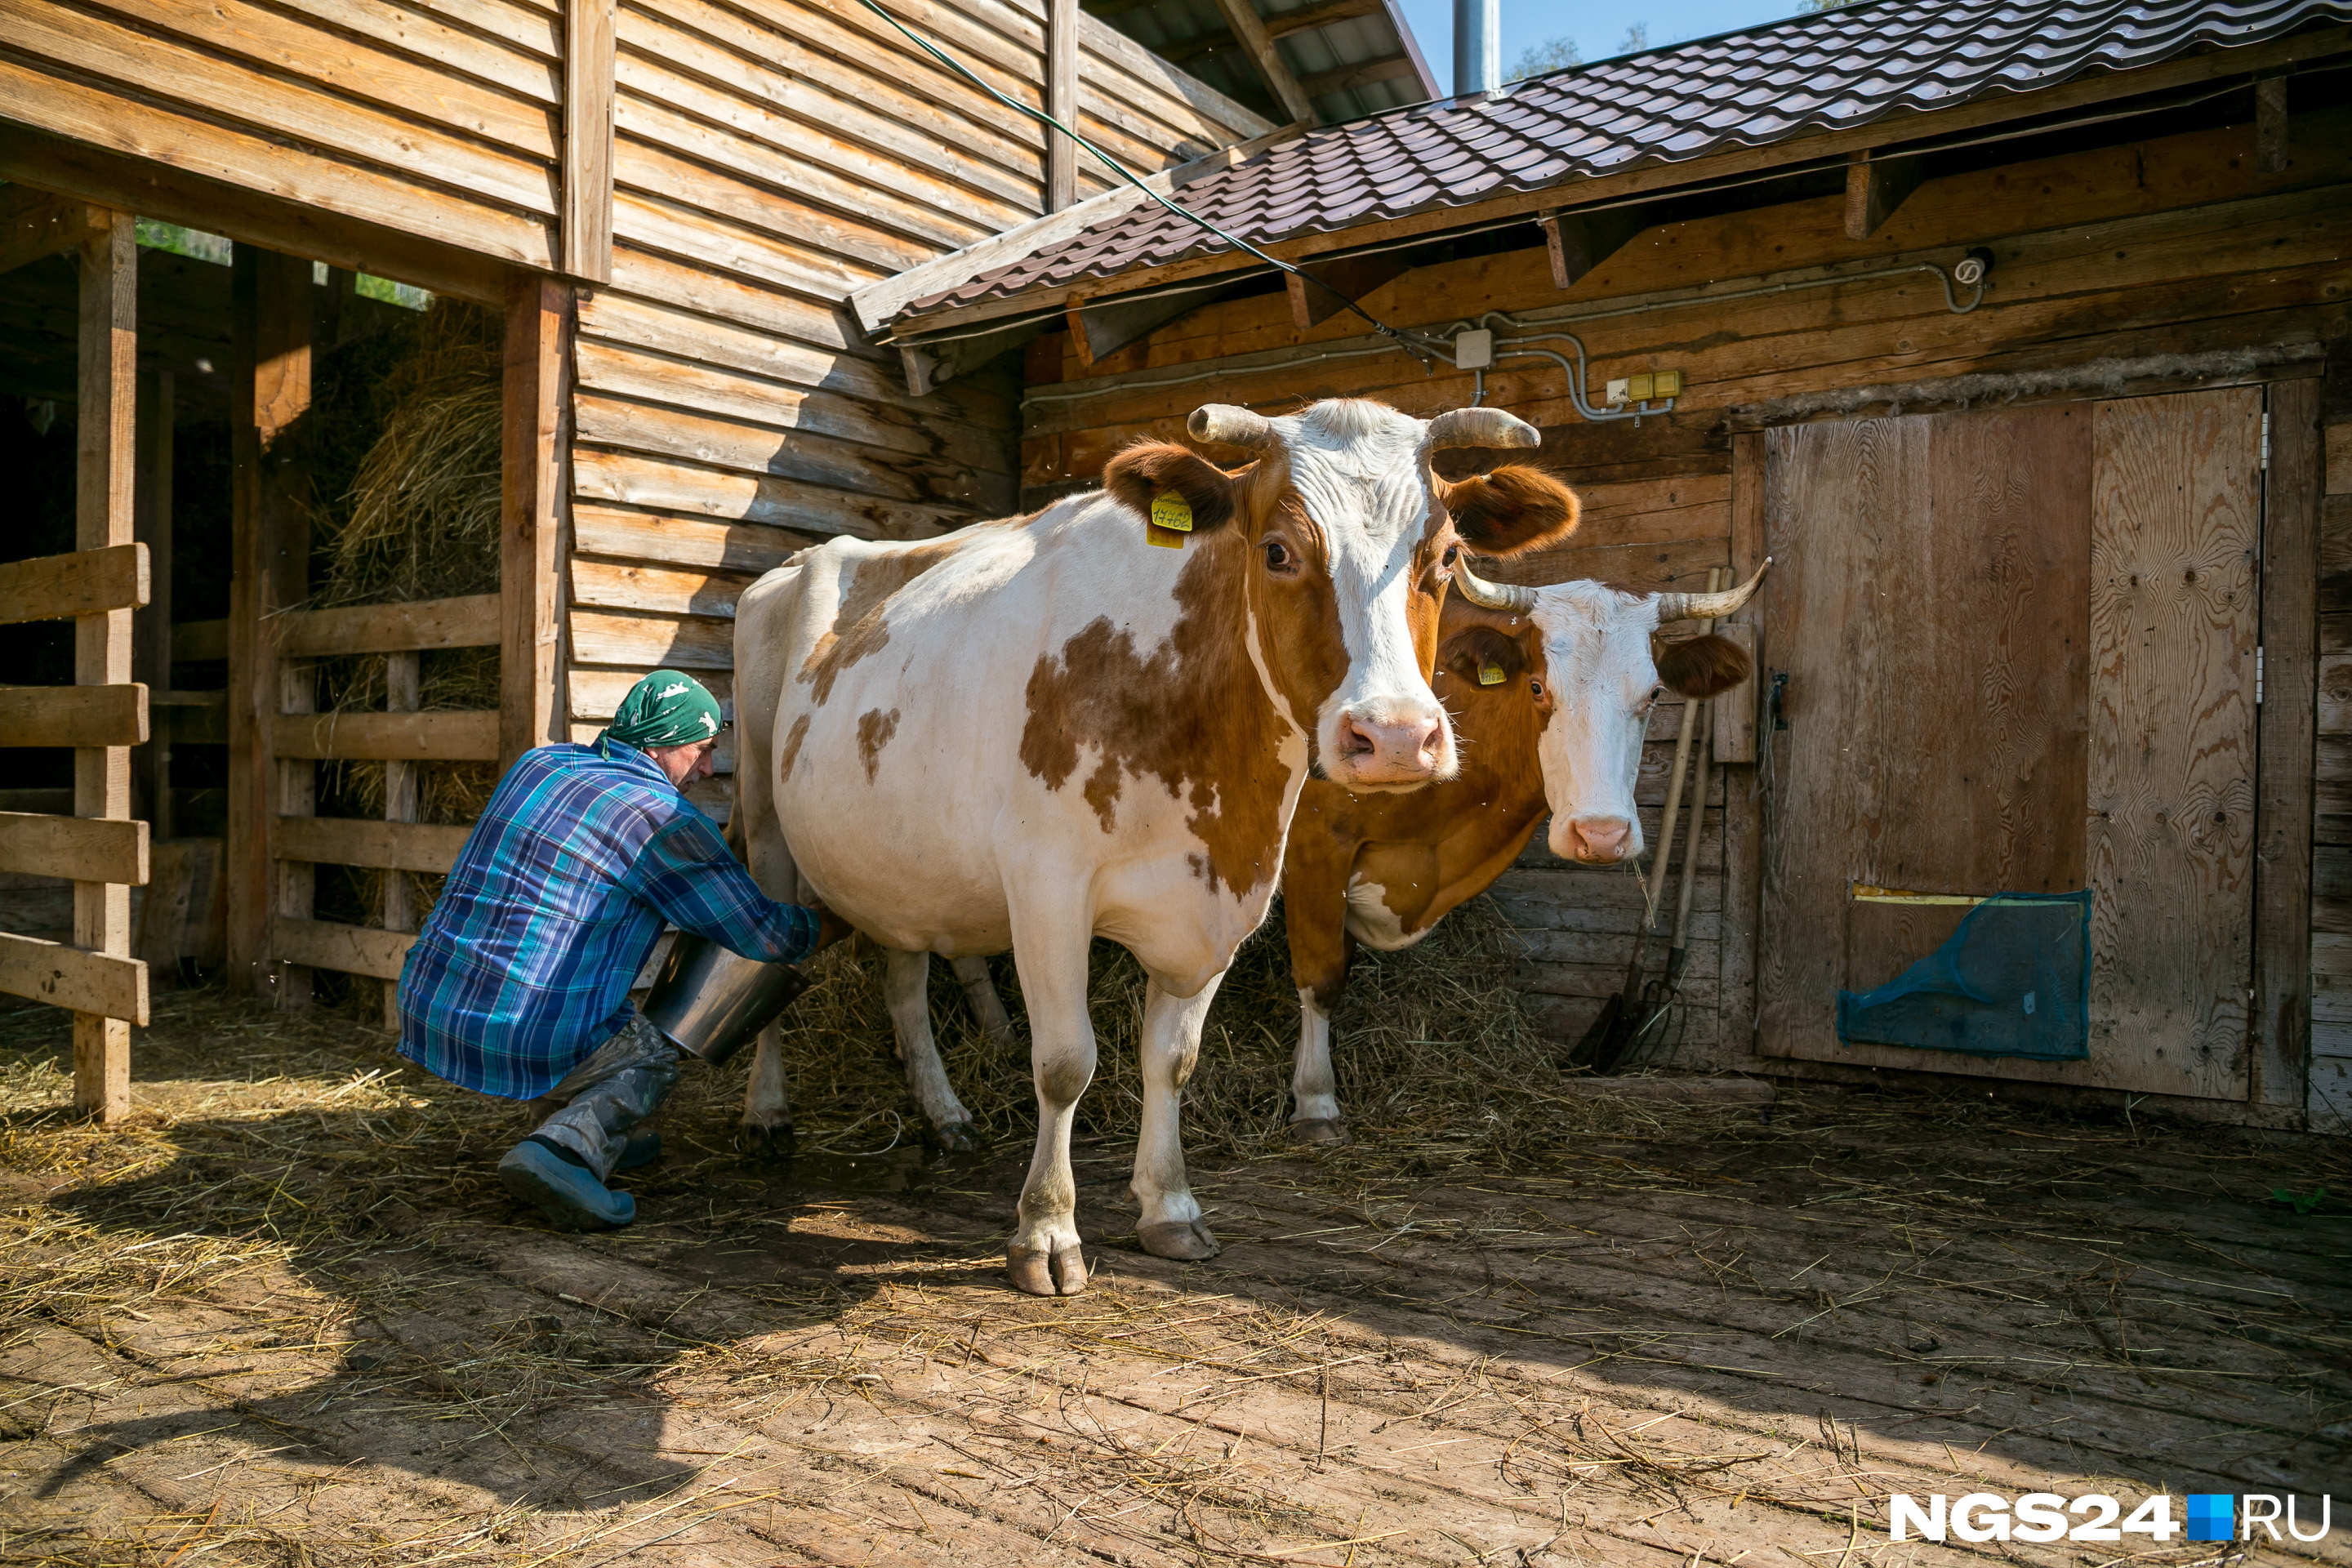 Коров в поселении держит только Владимир Тиньков и раздает молоко всем жителям. Для этого даже есть специальный журнал, каждый получает молоко в определенный день